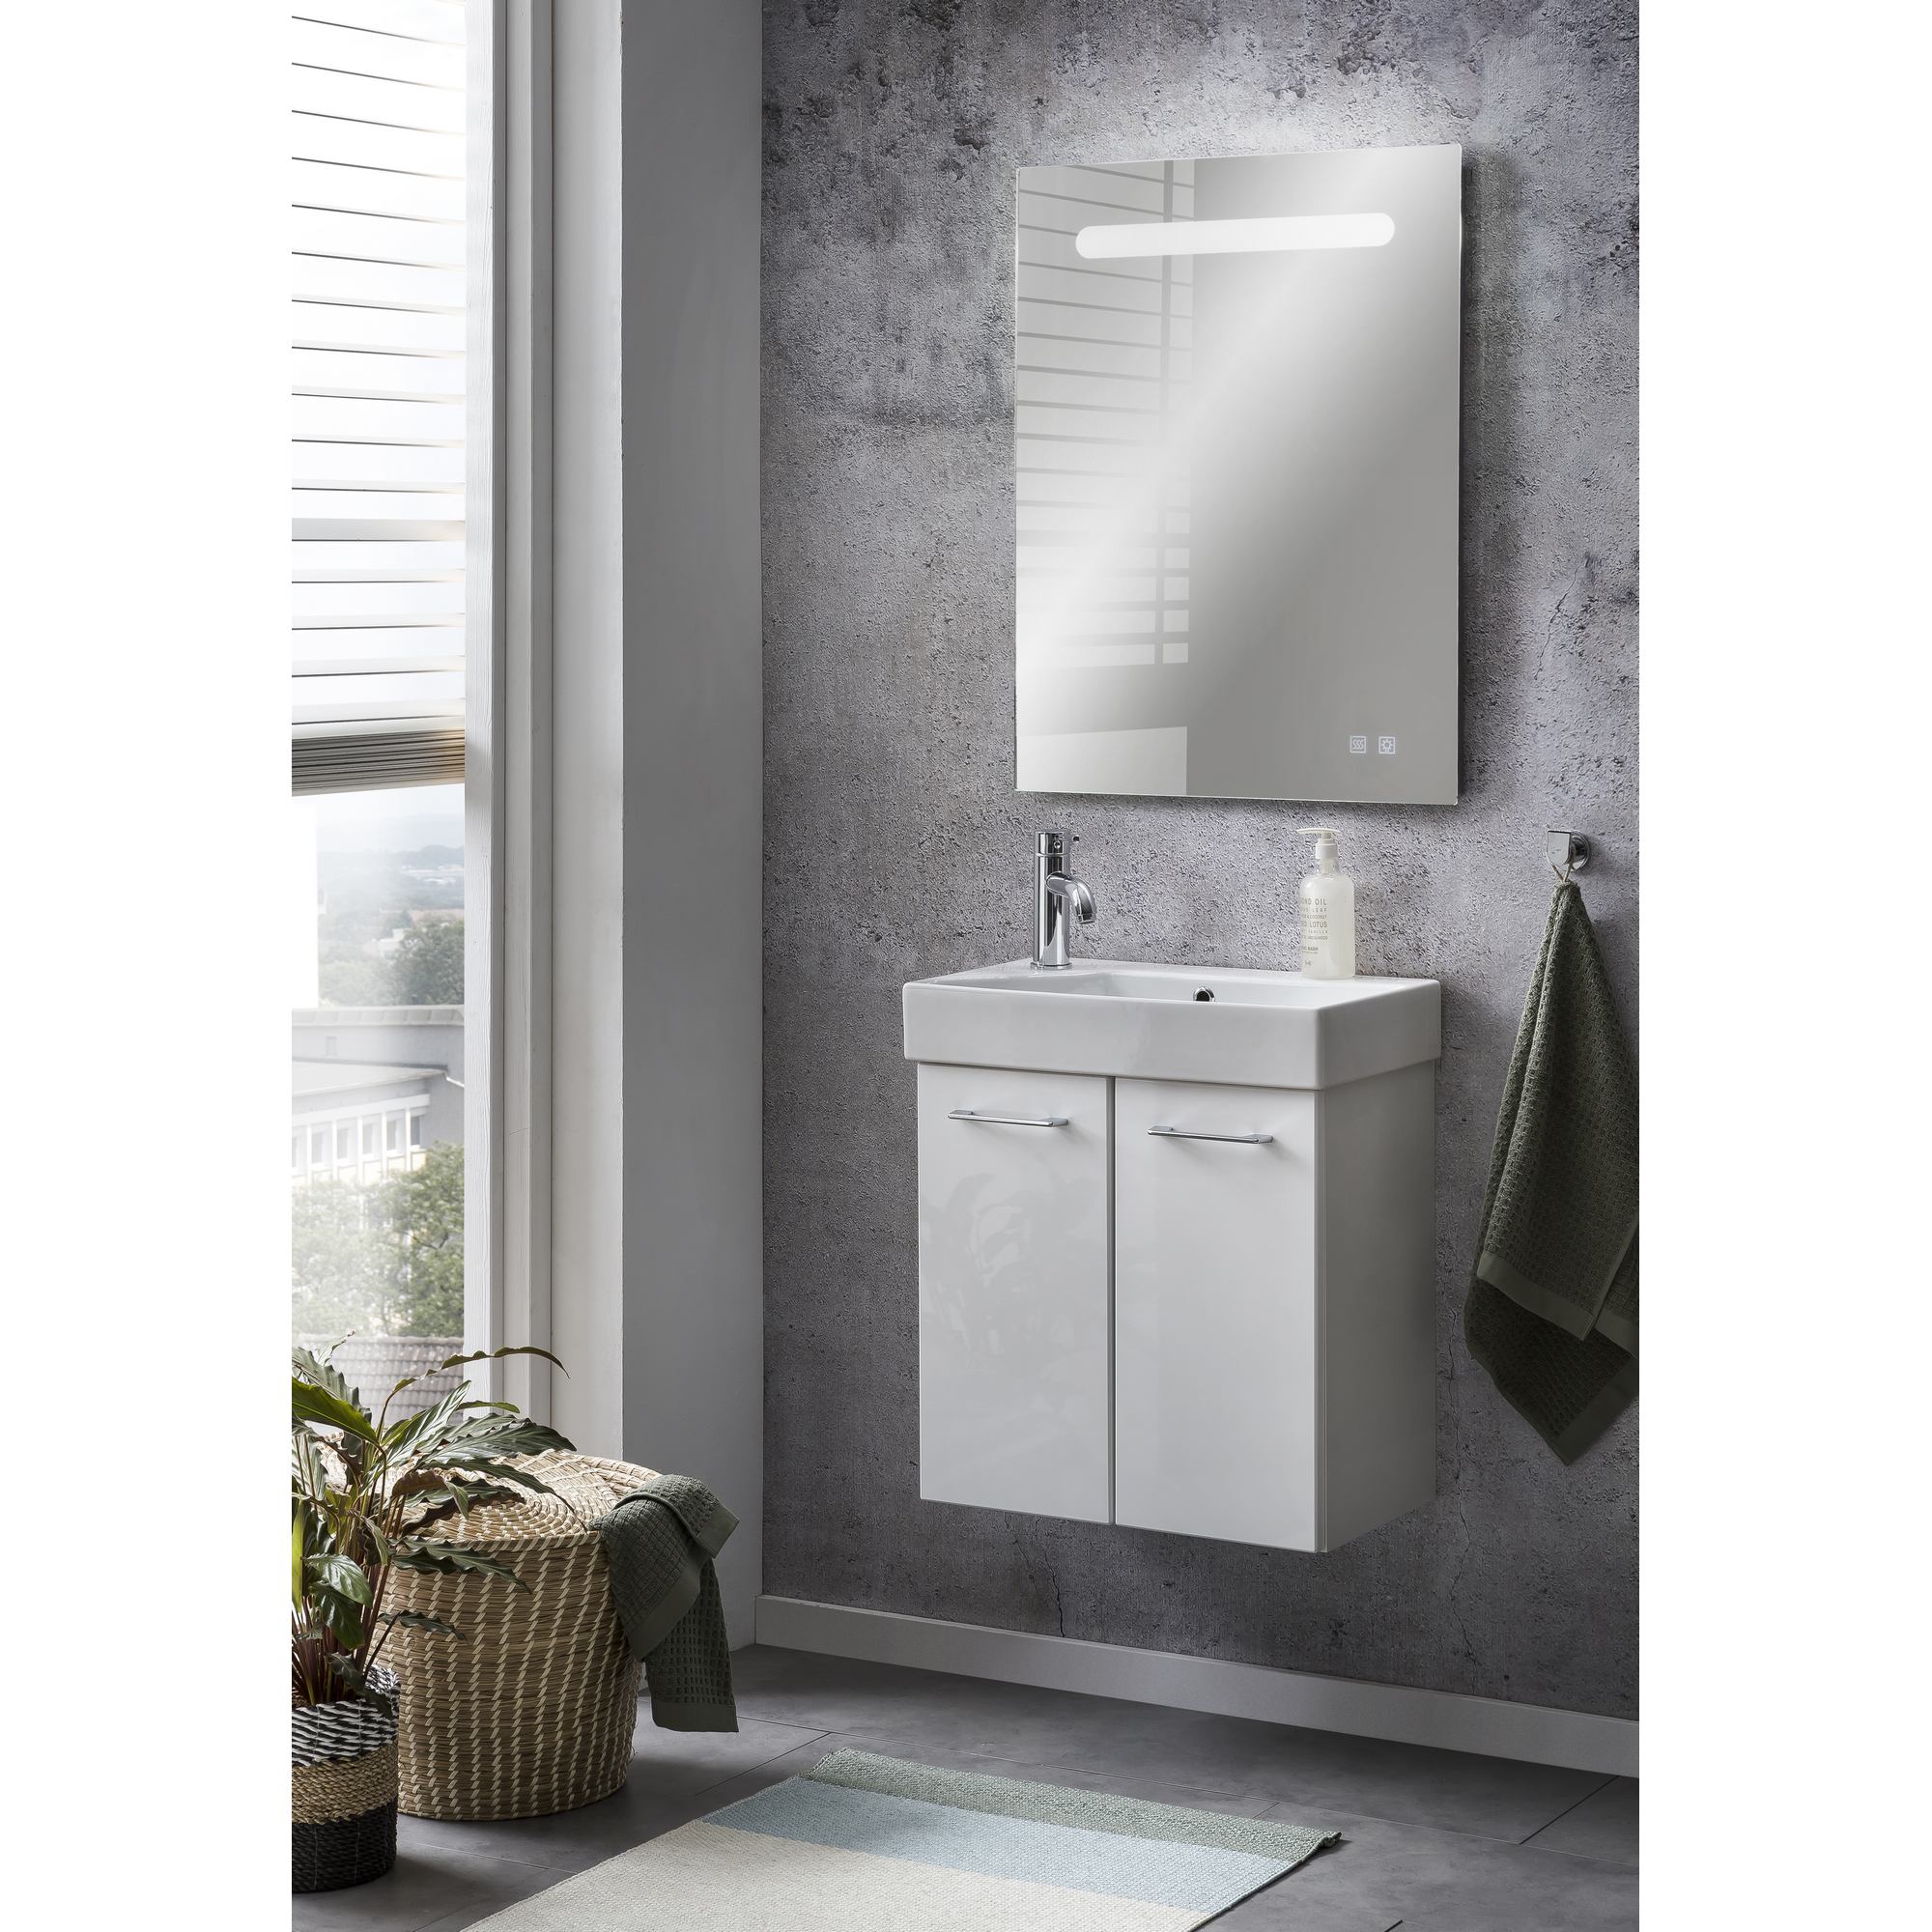 Waschtischunterschrank 'Tao' 51 x 55 x 32 cm weiß + product picture